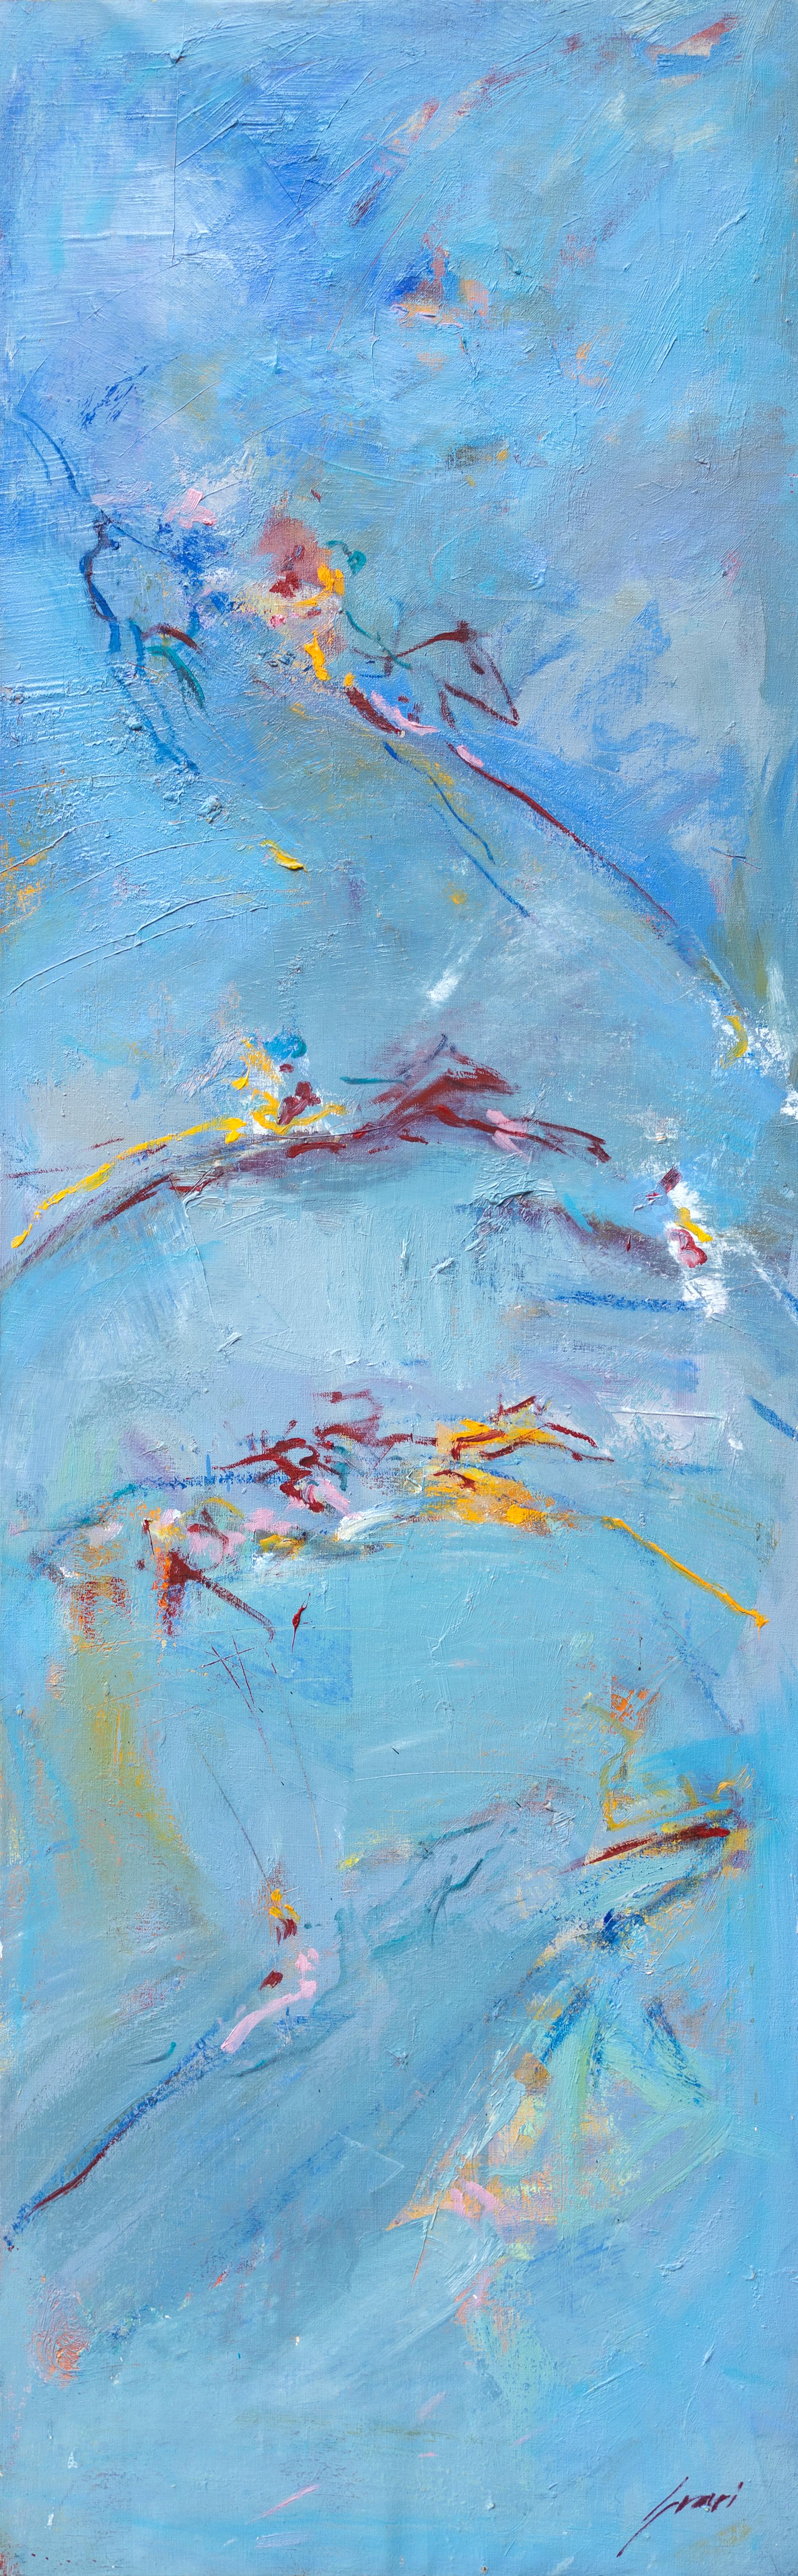 Cette œuvre expressionniste abstraite de l'artiste majorquin Pep Suari représente avec grâce le mouvement de quatre chevaux sur un fond bleu ciel. 
Par Pep Suari
57.5" x 18.25"  Acrylique sur toile